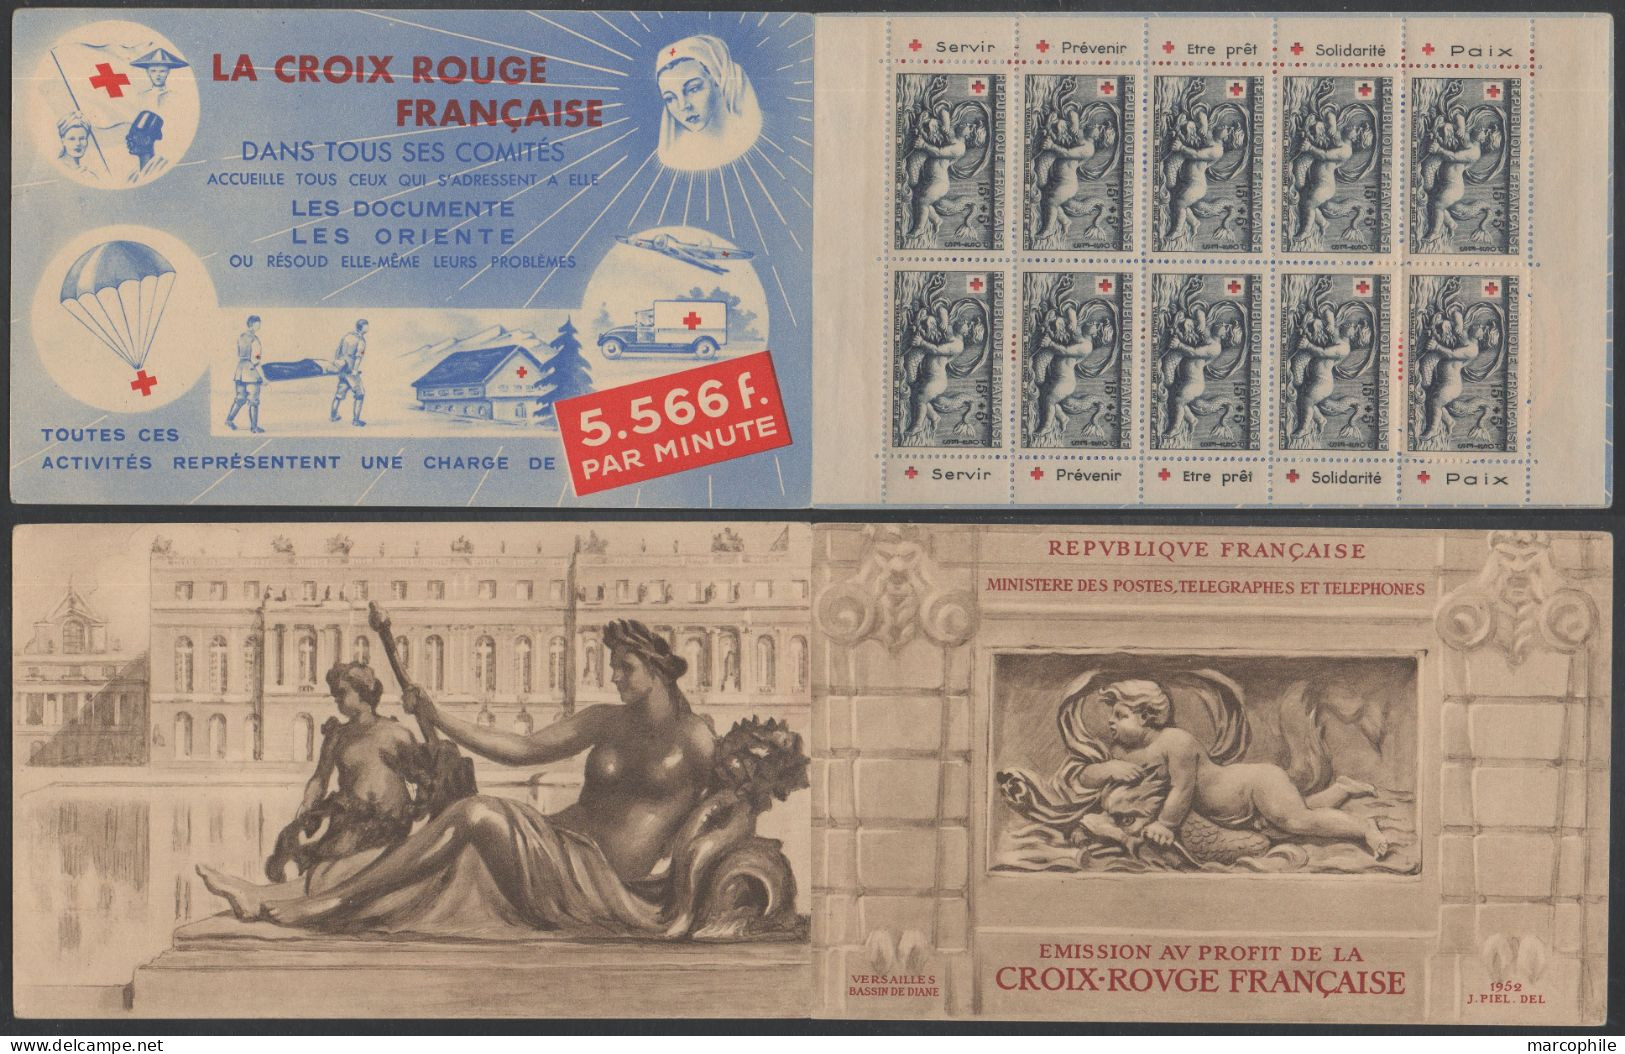 CARNET CROIX ROUGE 1952 / NEUF SANS CHARNIERE **  / COTE 550.00 € (ref 8063) - Croce Rossa